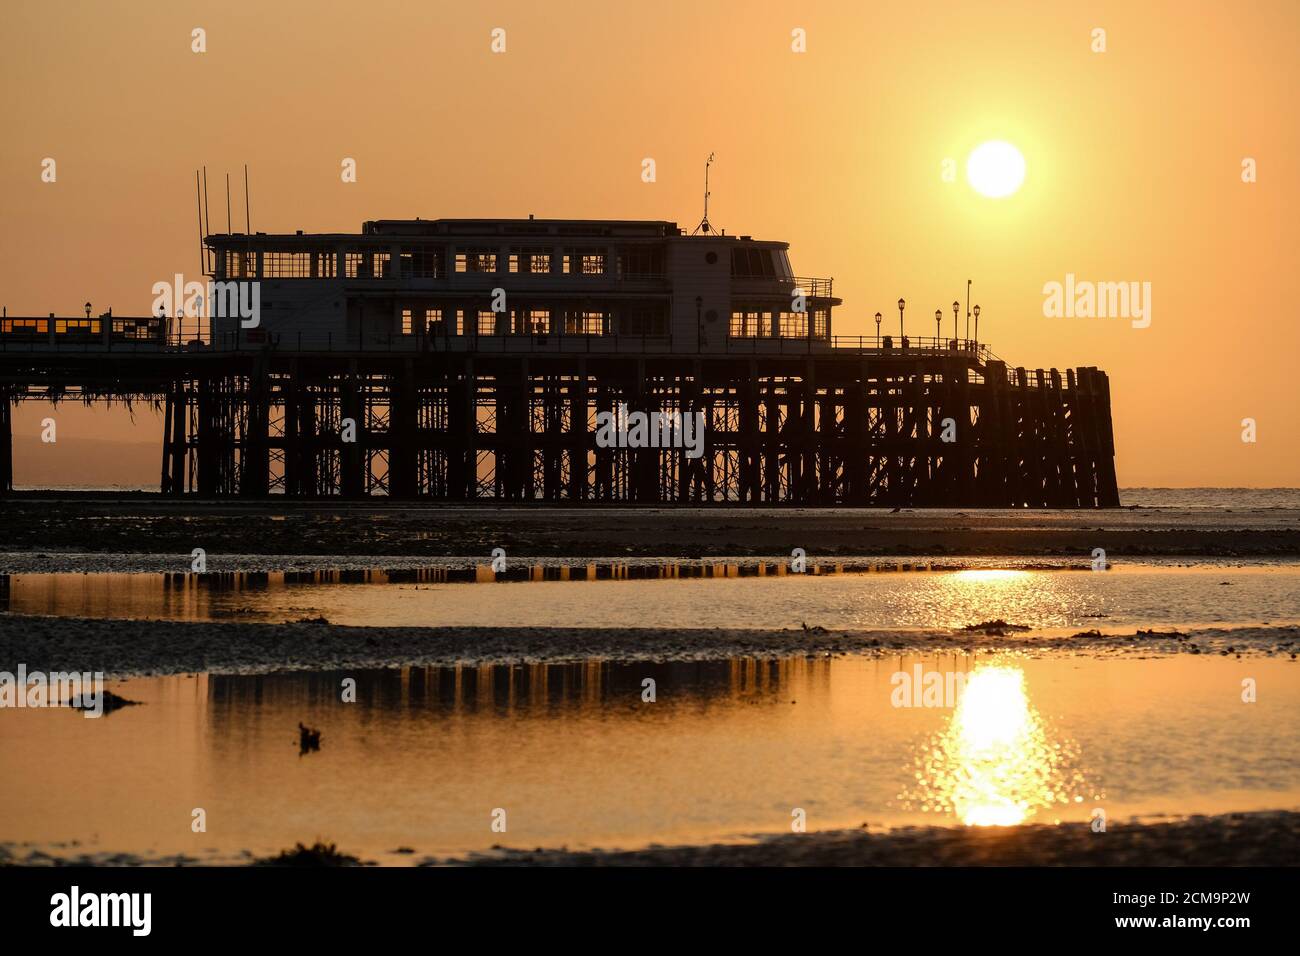 Worthing Beach, Worthing, Reino Unido. 17 de septiembre de 2020. El muelle del año Art Deco 2019 está perfilado por el sol mientras se levanta en una cálida mañana de septiembre. Imagen de crédito: Julie Edwards/Alamy Live News Foto de stock